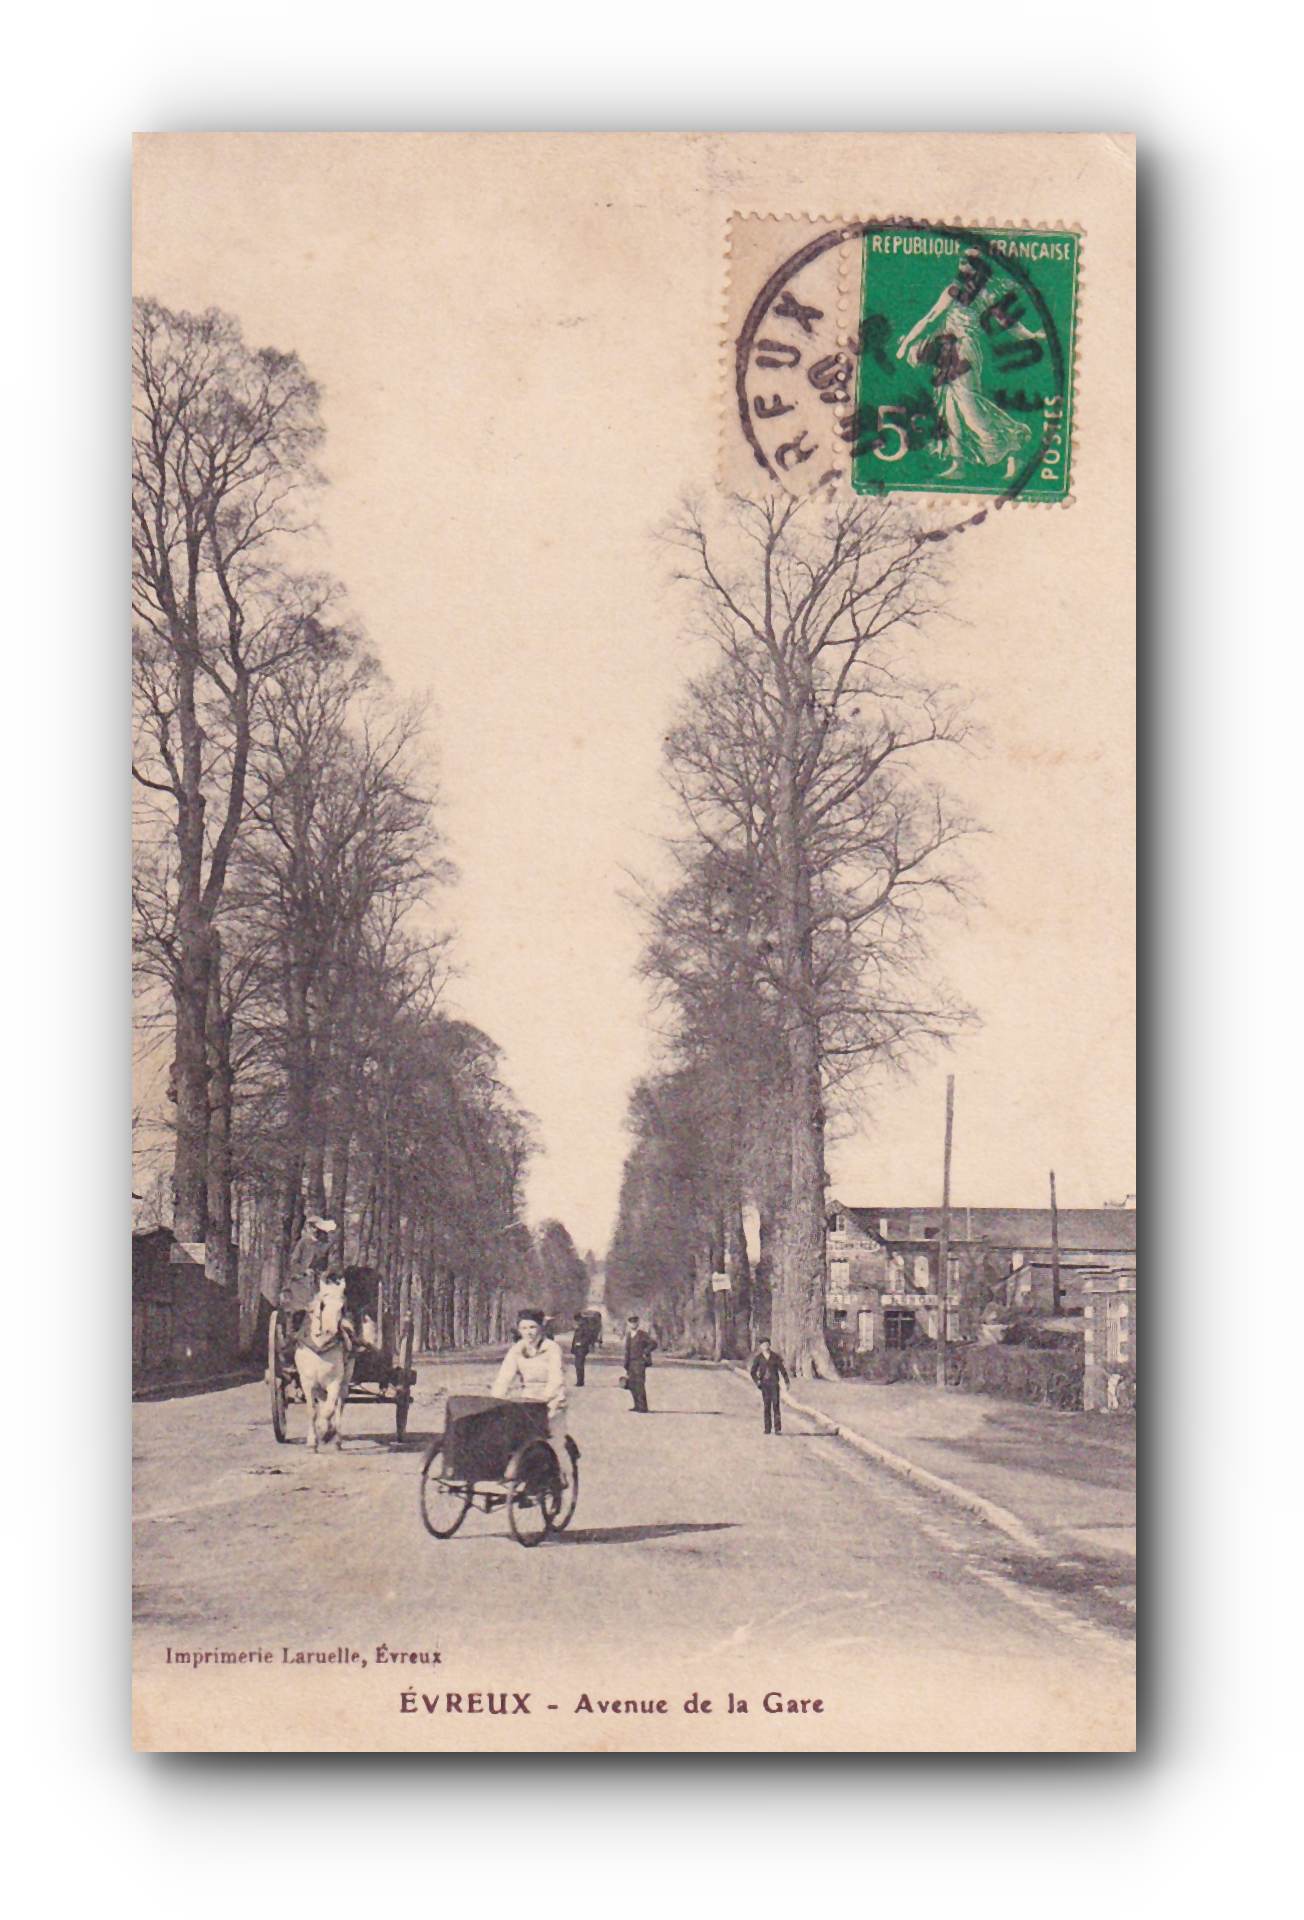 - ÉVREUX - Avenue de la Gare - 22.06.1914 -